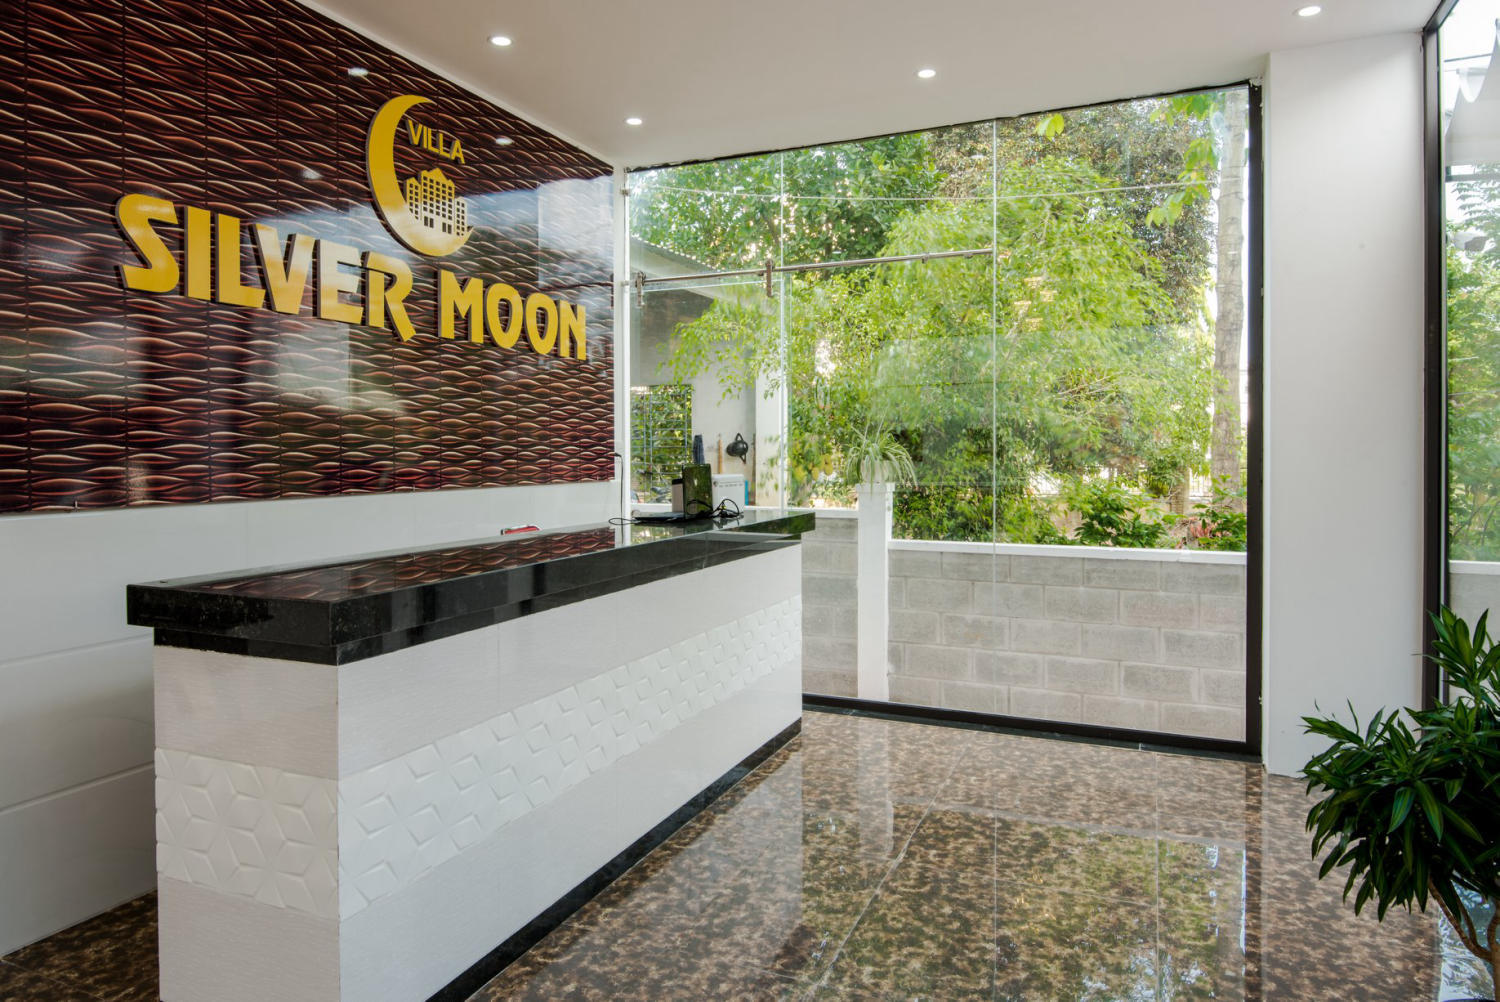 Silver Moon Villa Hoi An - Khách sạn yên bình giữa trung tâm Hội An 2